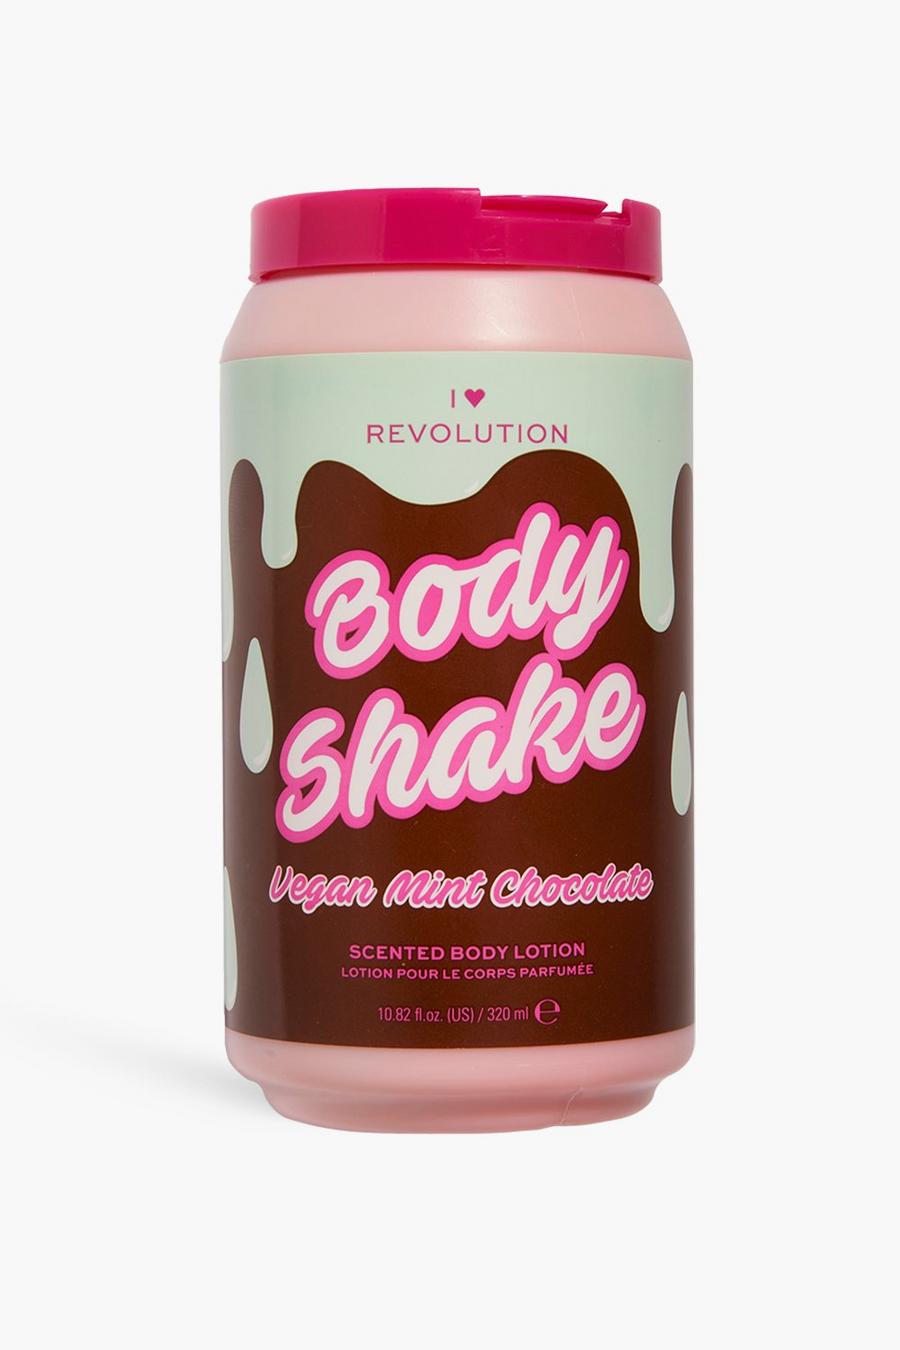 Pink I Heart Revolution Tasty Body Milkshake Mint